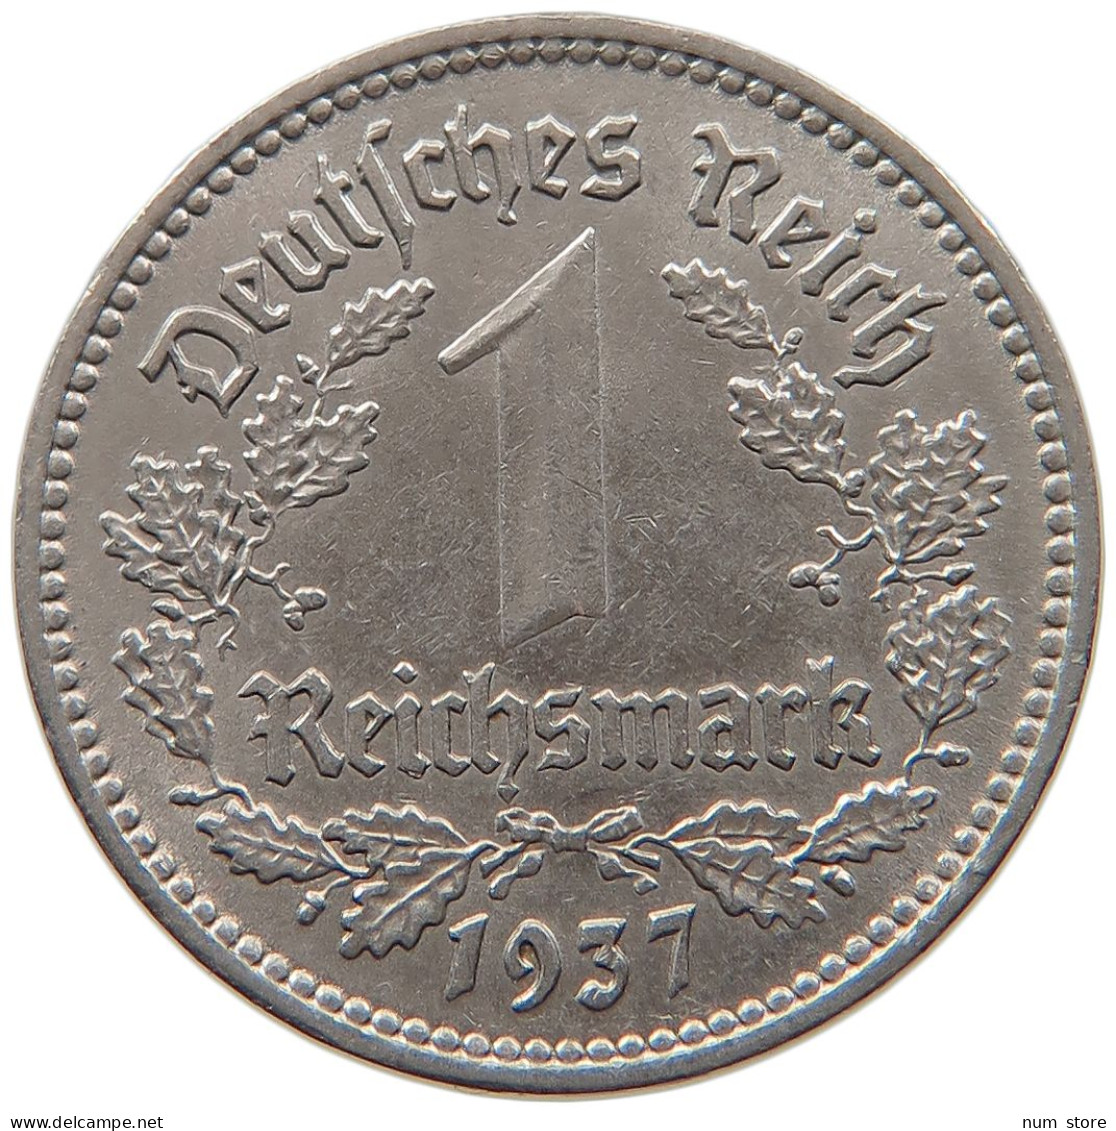 DRITTES REICH MARK 1937 A  #MA 099343 - 1 Reichsmark